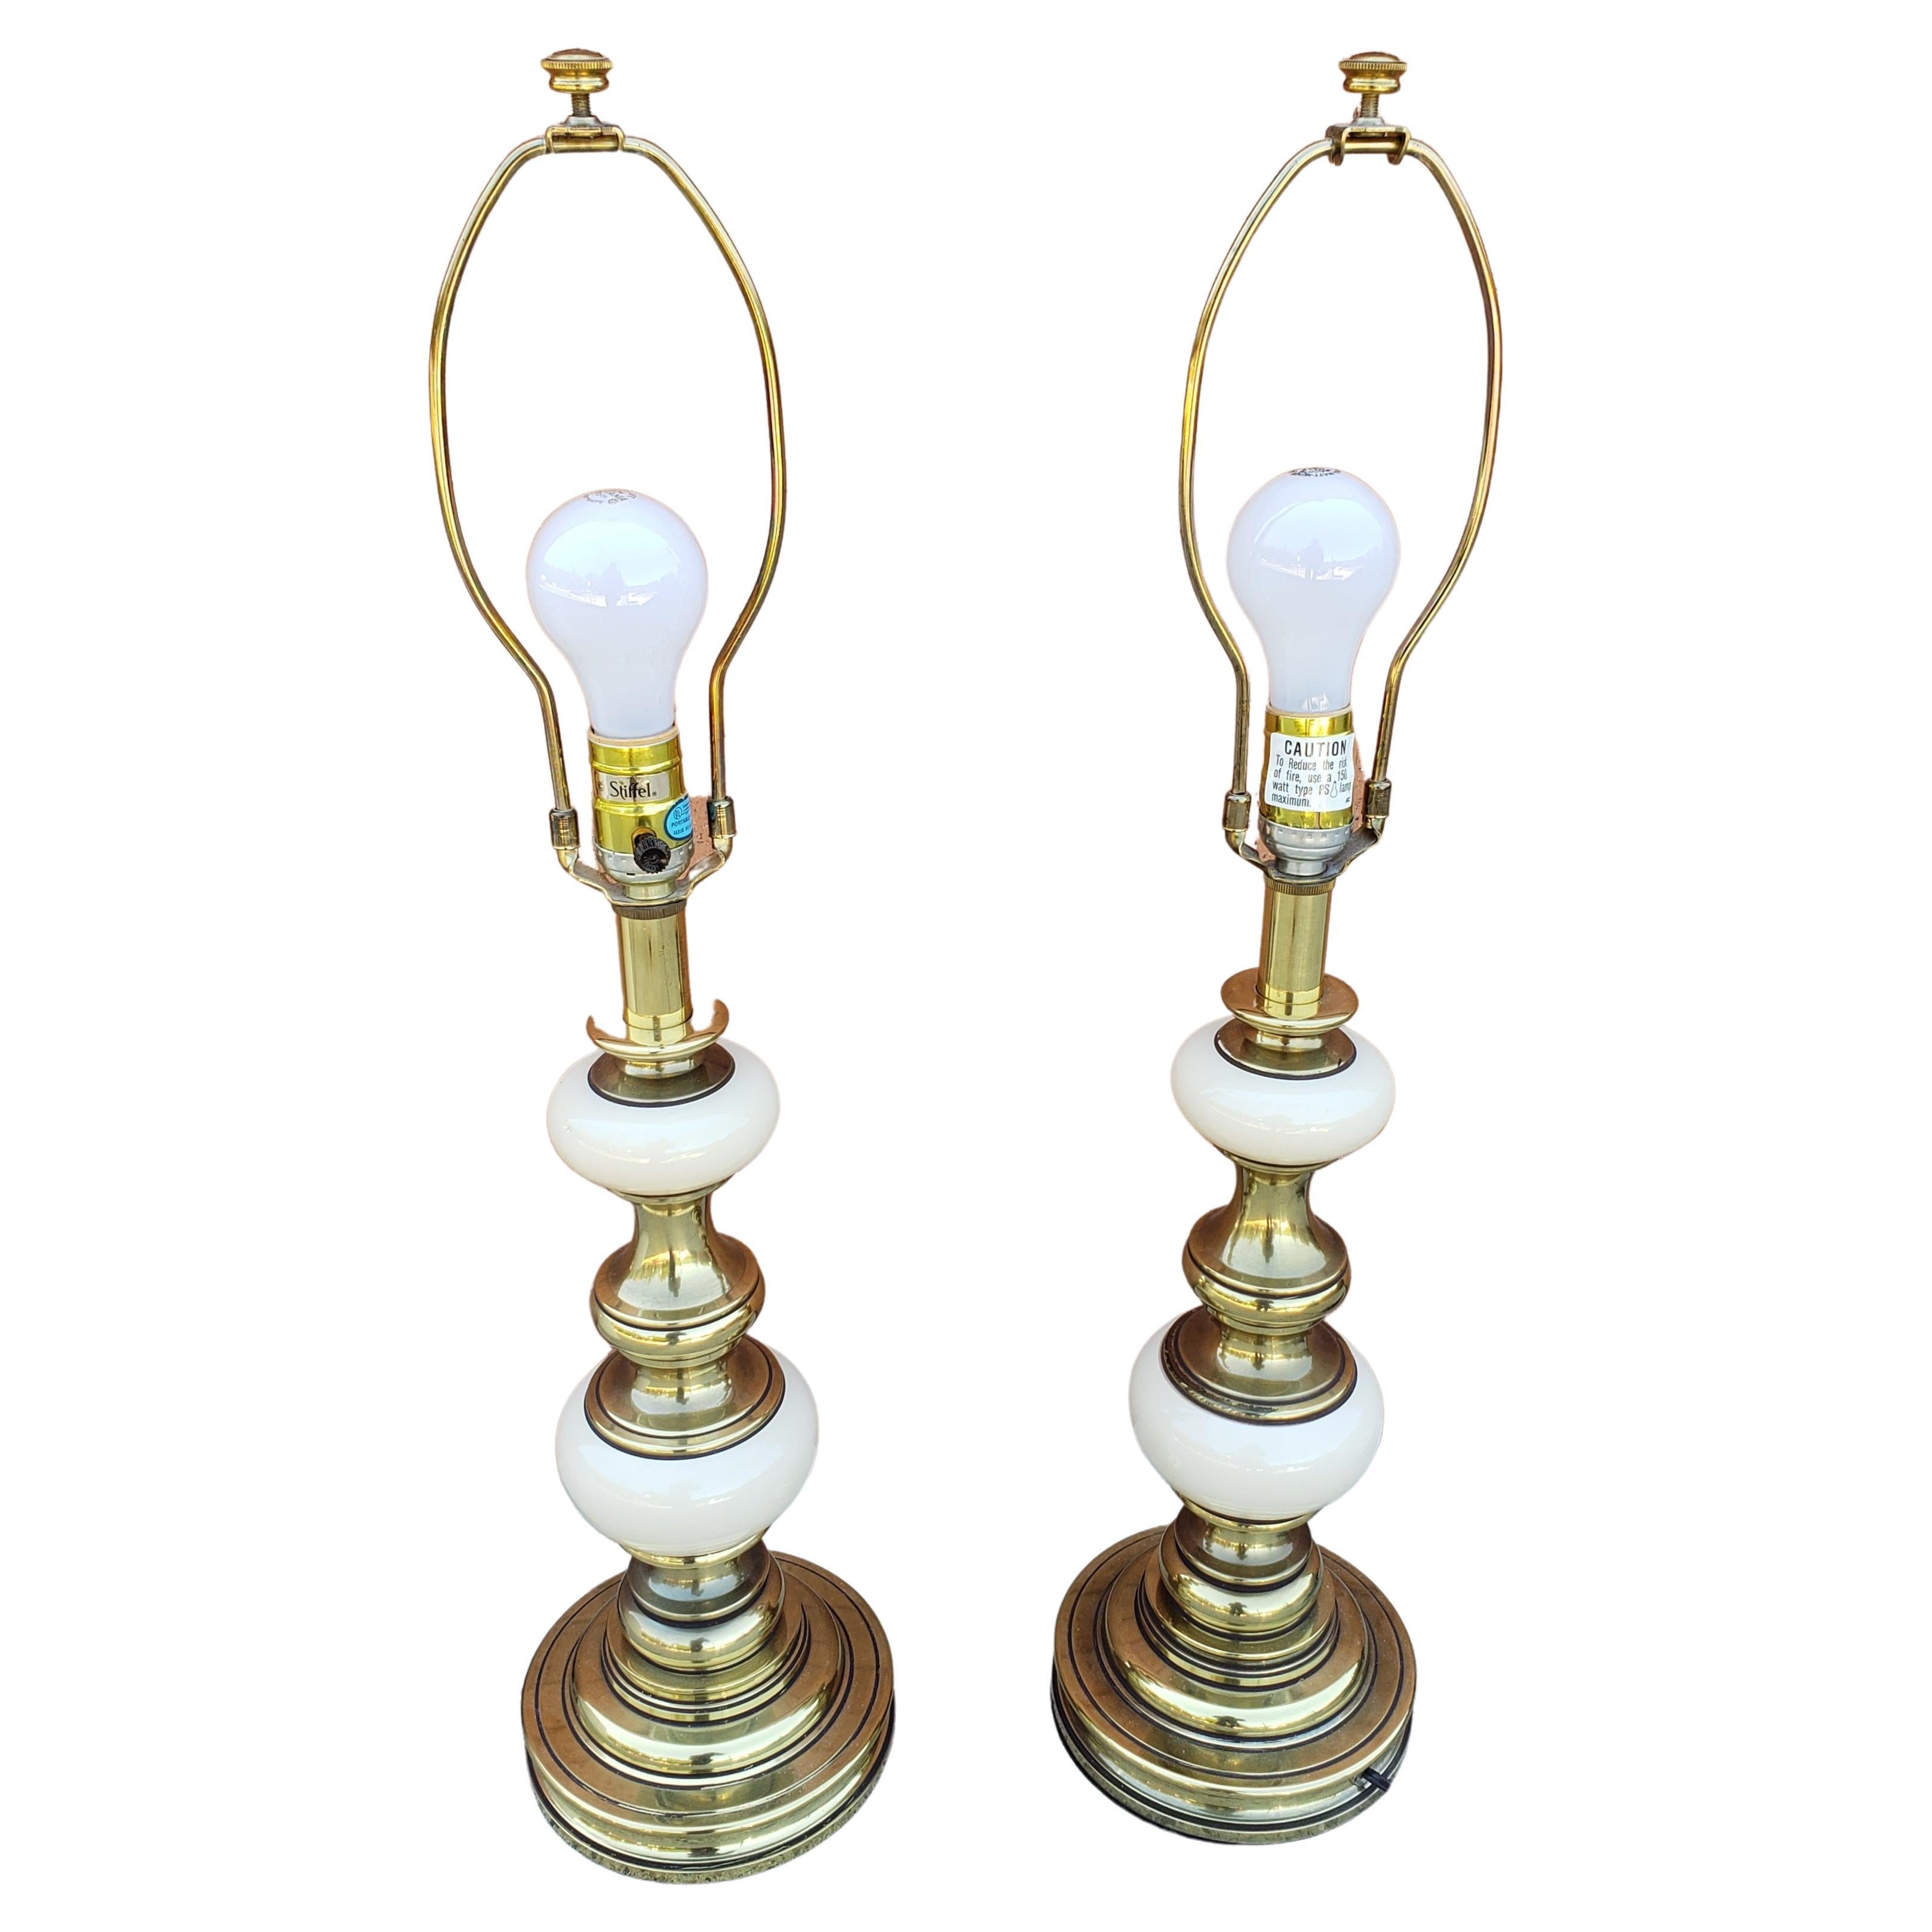 Ein exquisites Paar Tischlampen im viktorianischen Stil aus massivem Messing und Porzellan von Stiffel. In sehr gutem Vintage-Zustand. Kommt mit Stiffel Original-Schirmen in gutem Vintage-Zustand. Messen Sie 6,5 